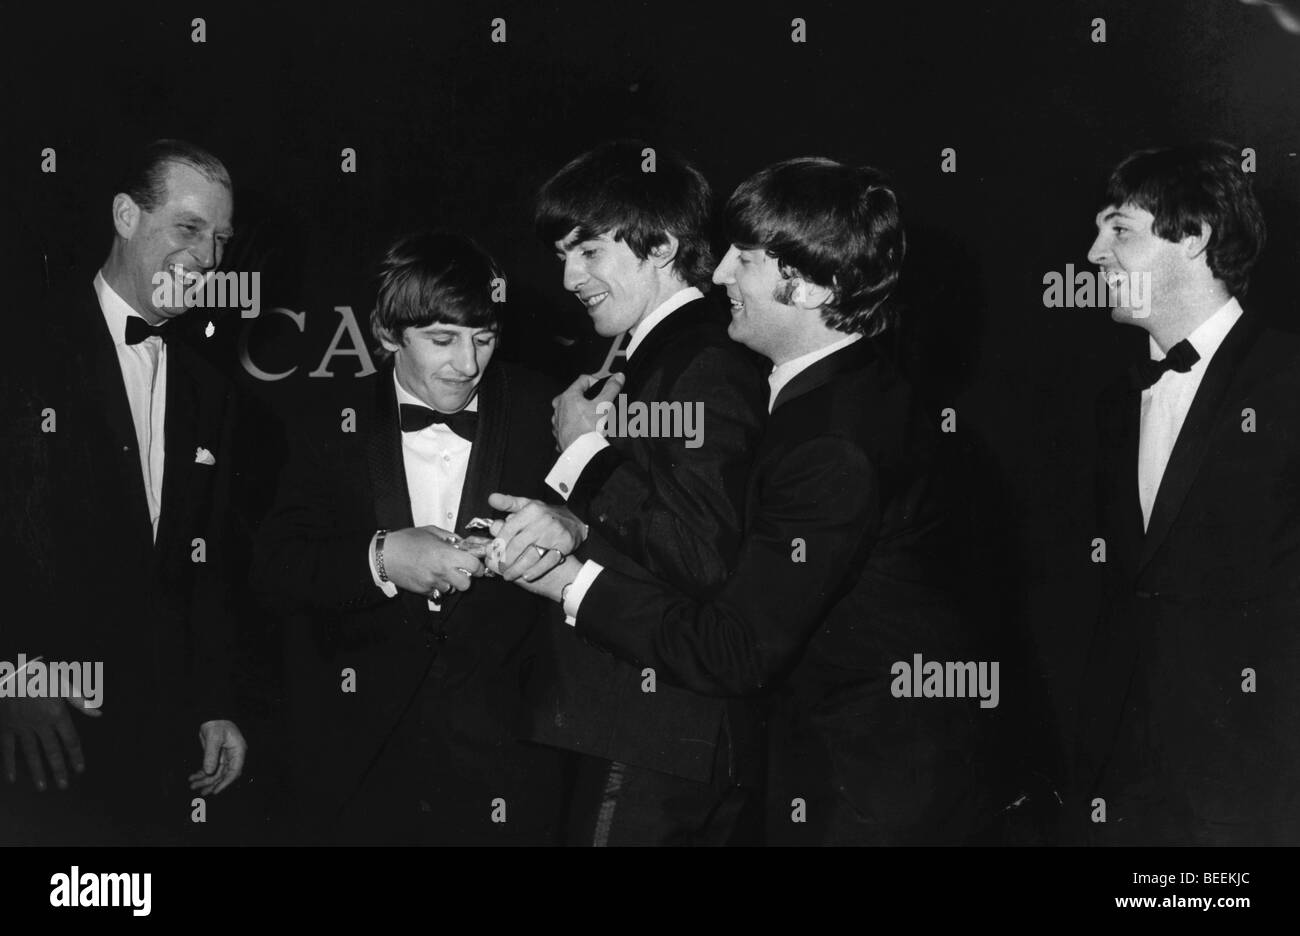 El príncipe Felipe cumple los Beatles a Carl Alan premios Foto de stock